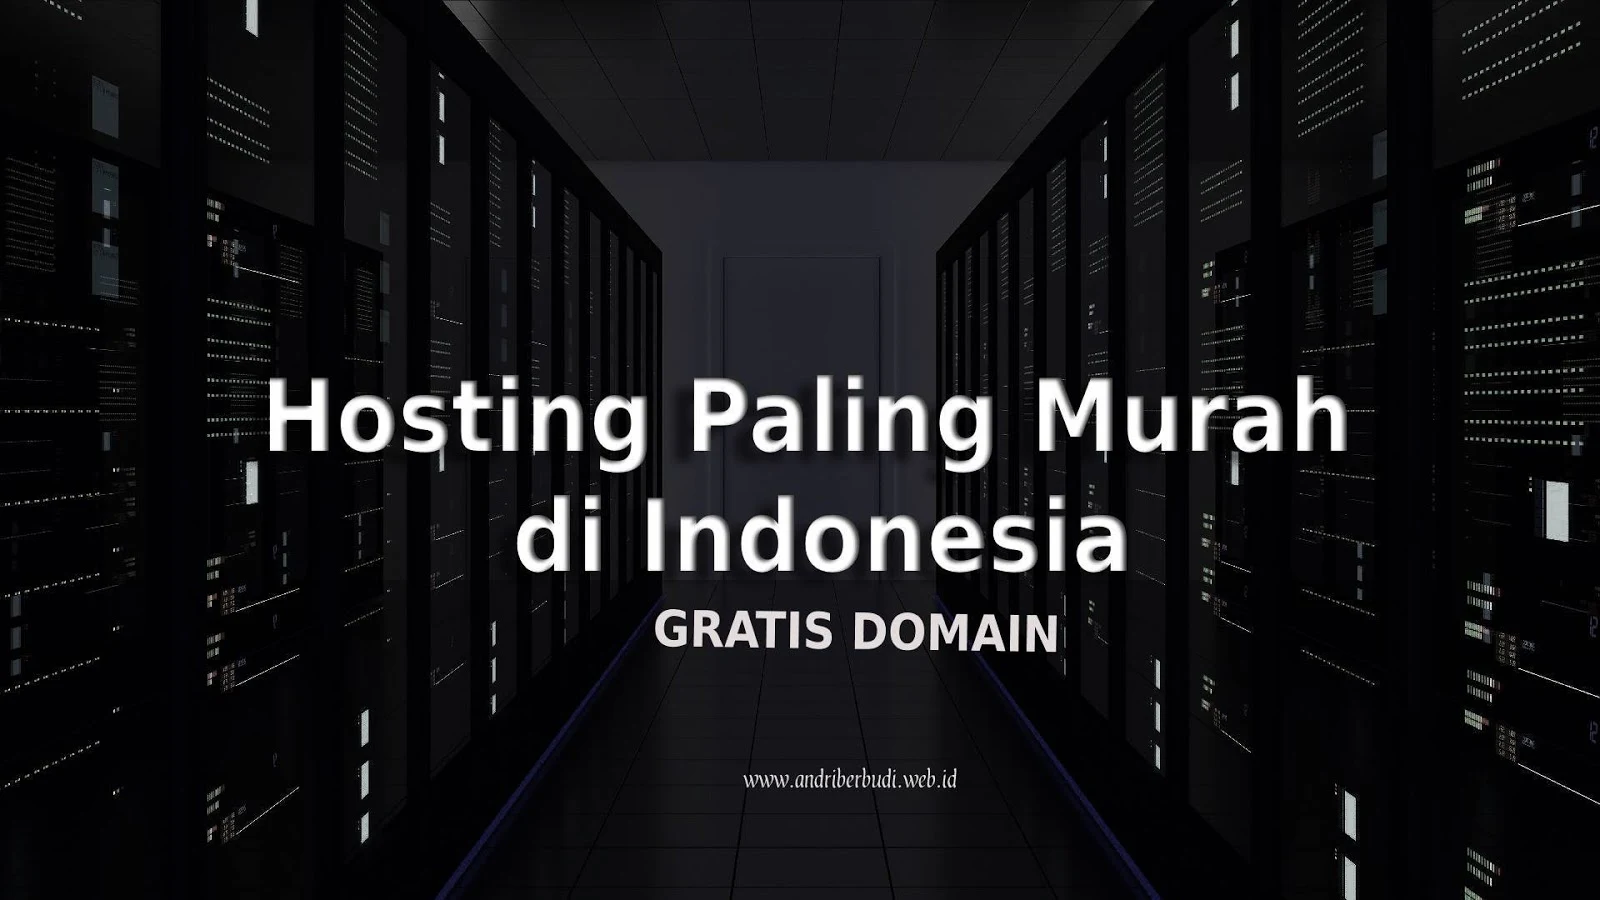 Hosting Paling Murah di Indonesia dan Gratis Domain